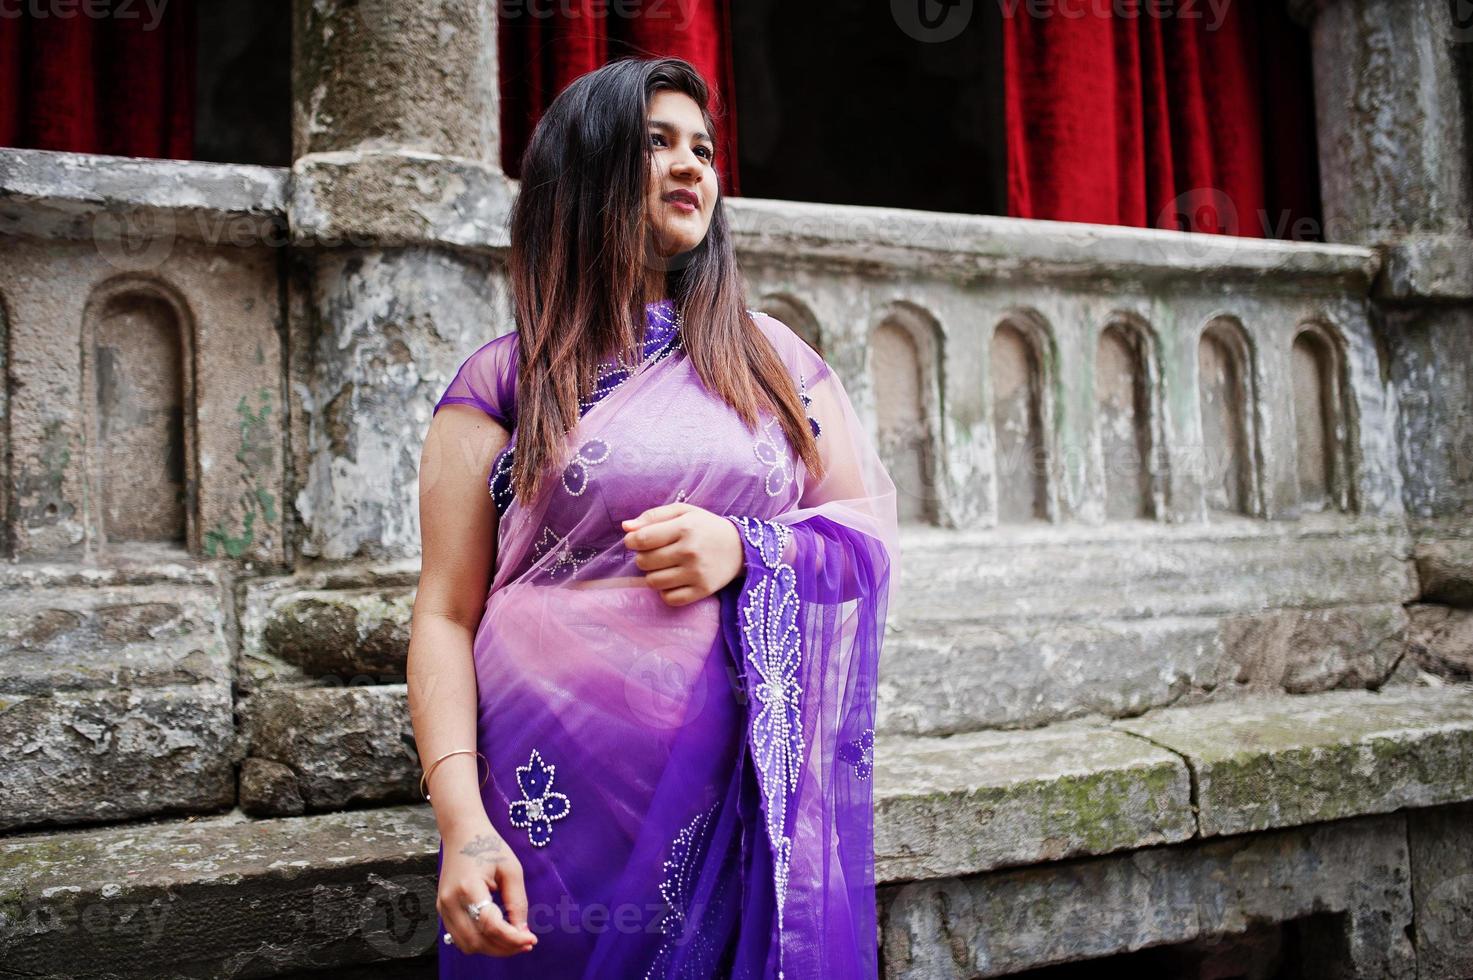 garota hindu indiana no tradicional saree violeta posou na rua contra a velha casa com cortinas vermelhas. foto